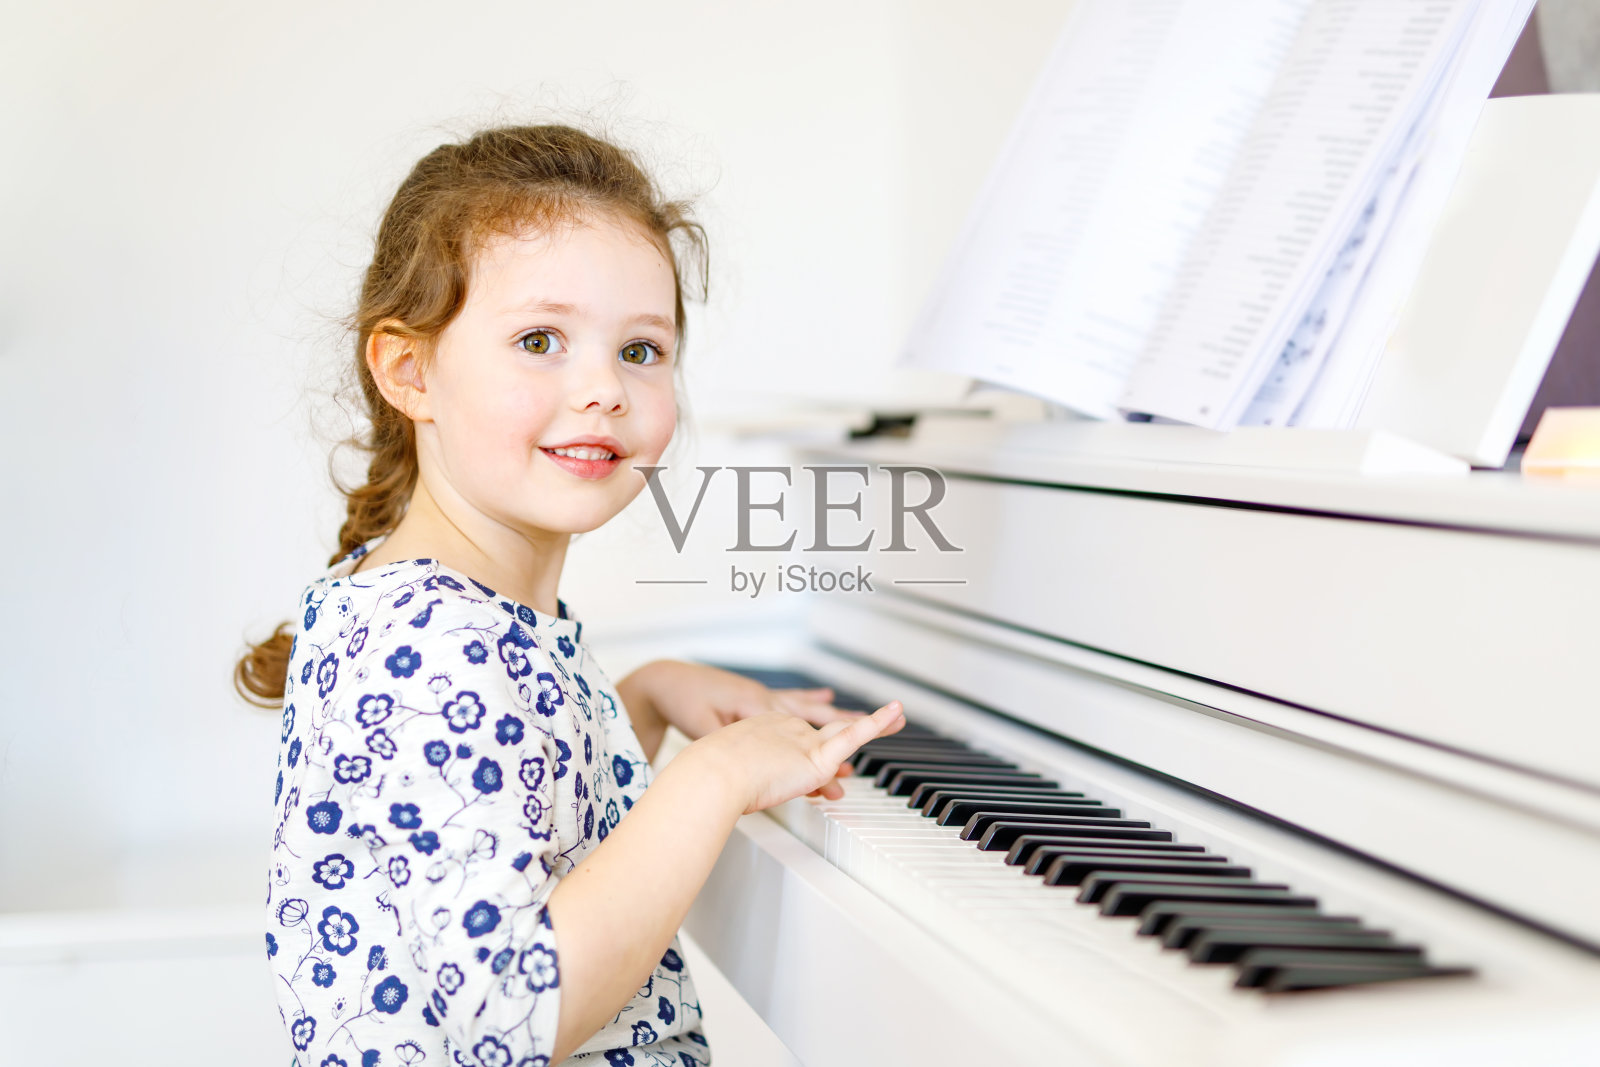 可爱健康的小女孩在客厅或音乐学校弹钢琴。学龄儿童在学习乐器的过程中获得乐趣。教育、技能的概念照片摄影图片